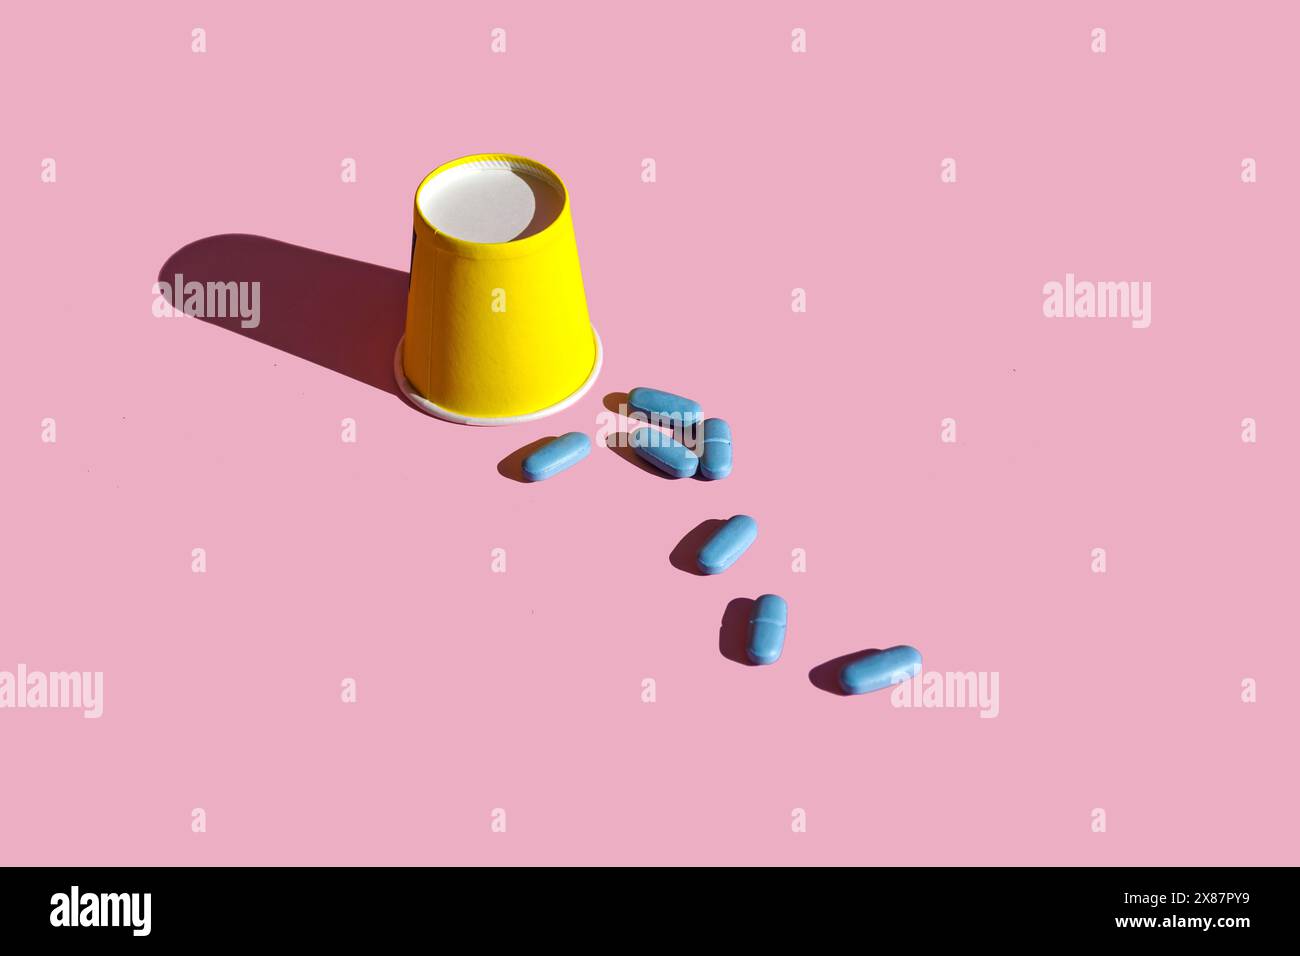 Tazza di carta gialla con pillole blu su sfondo rosa Foto Stock